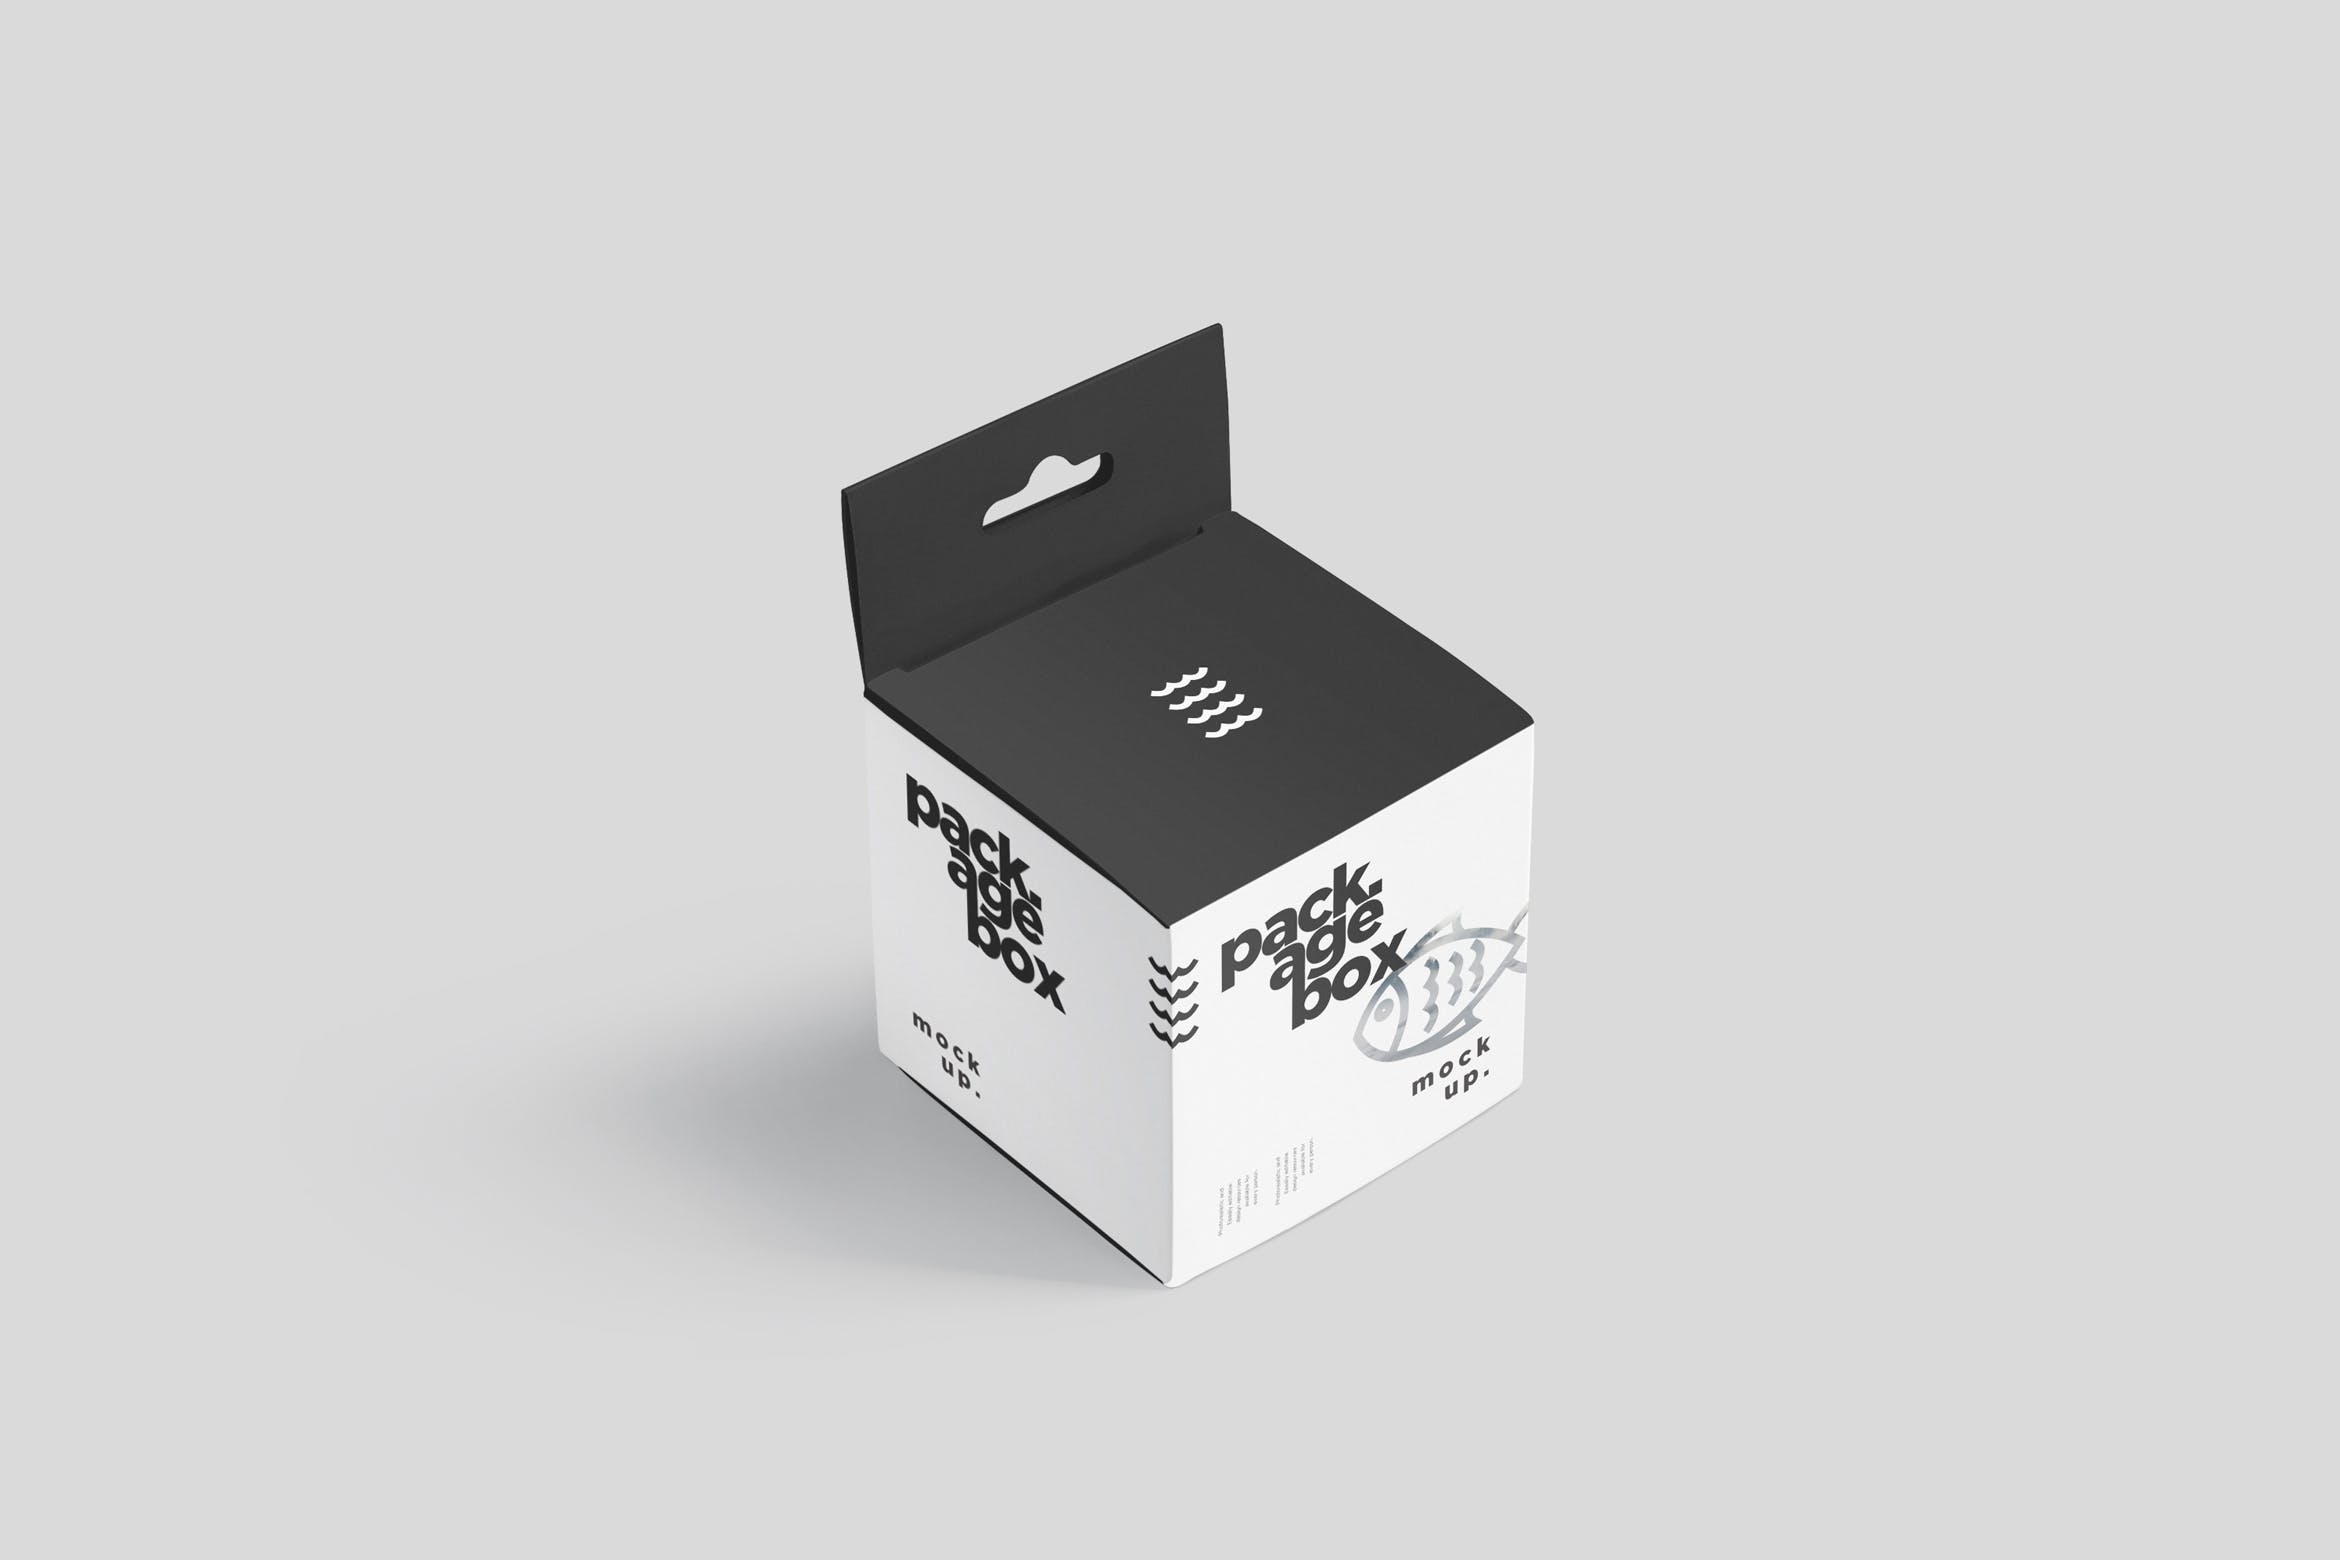 挂耳式方形产品包装盒样机模板 Package Box Mockup Set – Square With Hanger插图